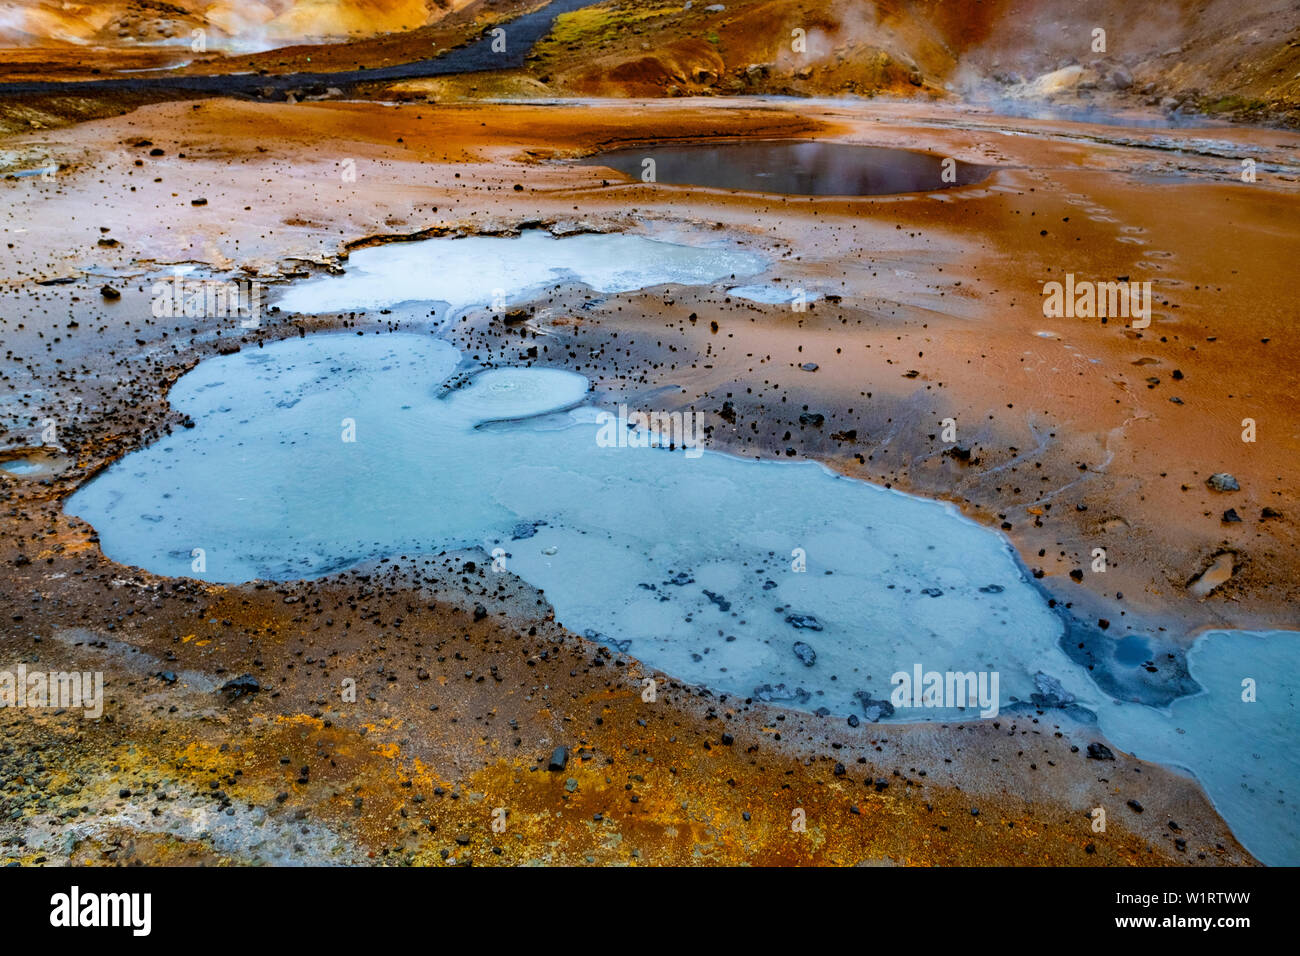 Éruption d'un geyser de rochers, la piscine et le résidu dans le sud de l'Islande au printemps Banque D'Images